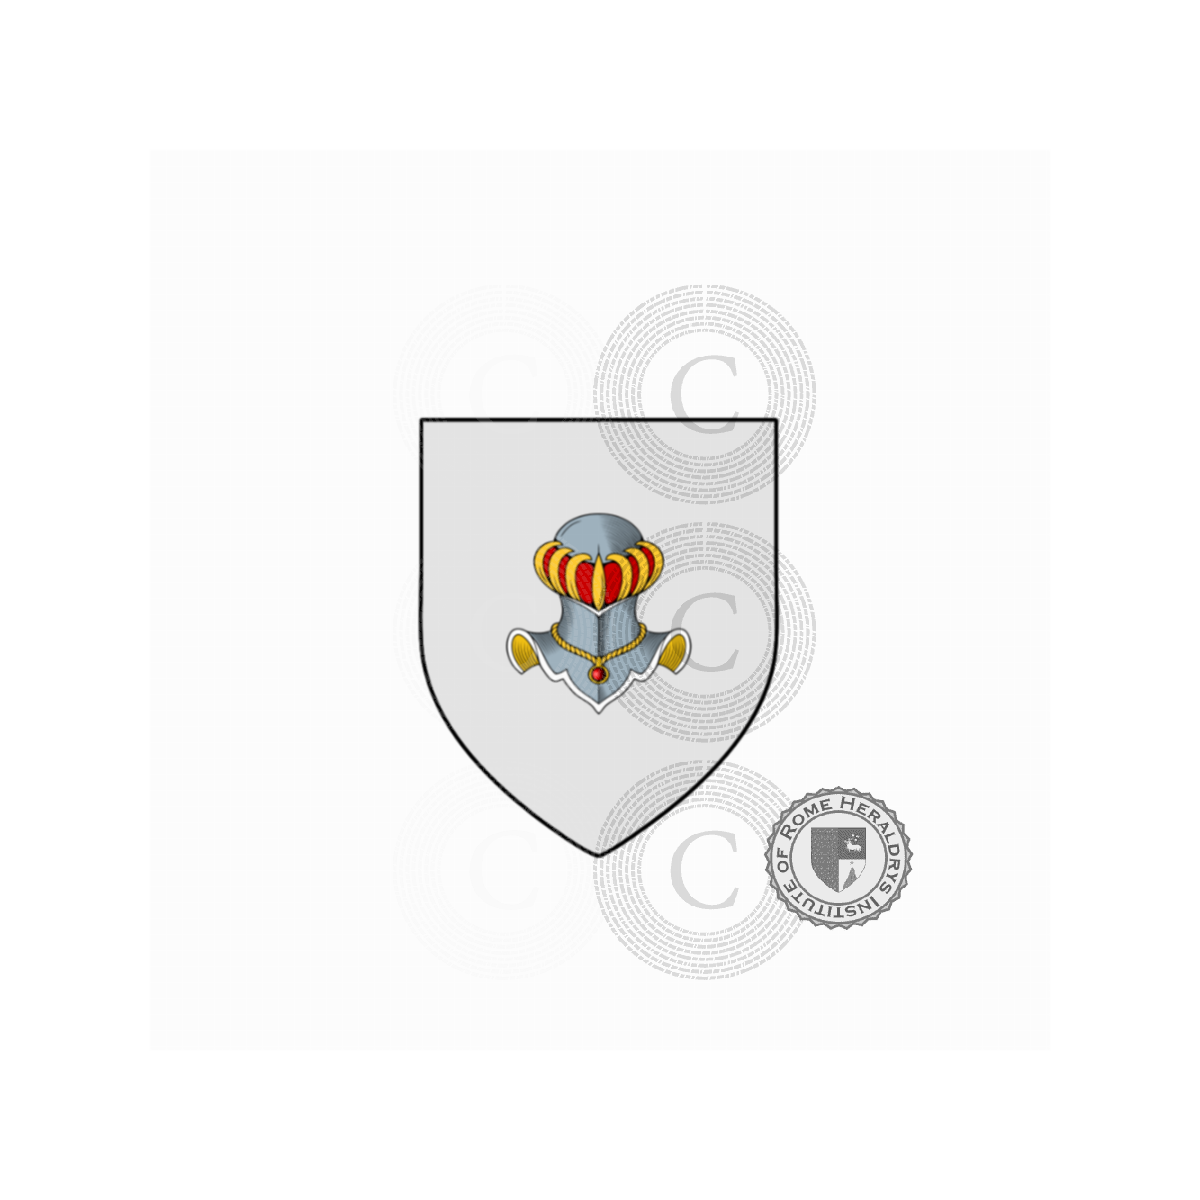 Escudo de la familiaMarchesi, Marchesi da Cortona,Marchesi de taddei